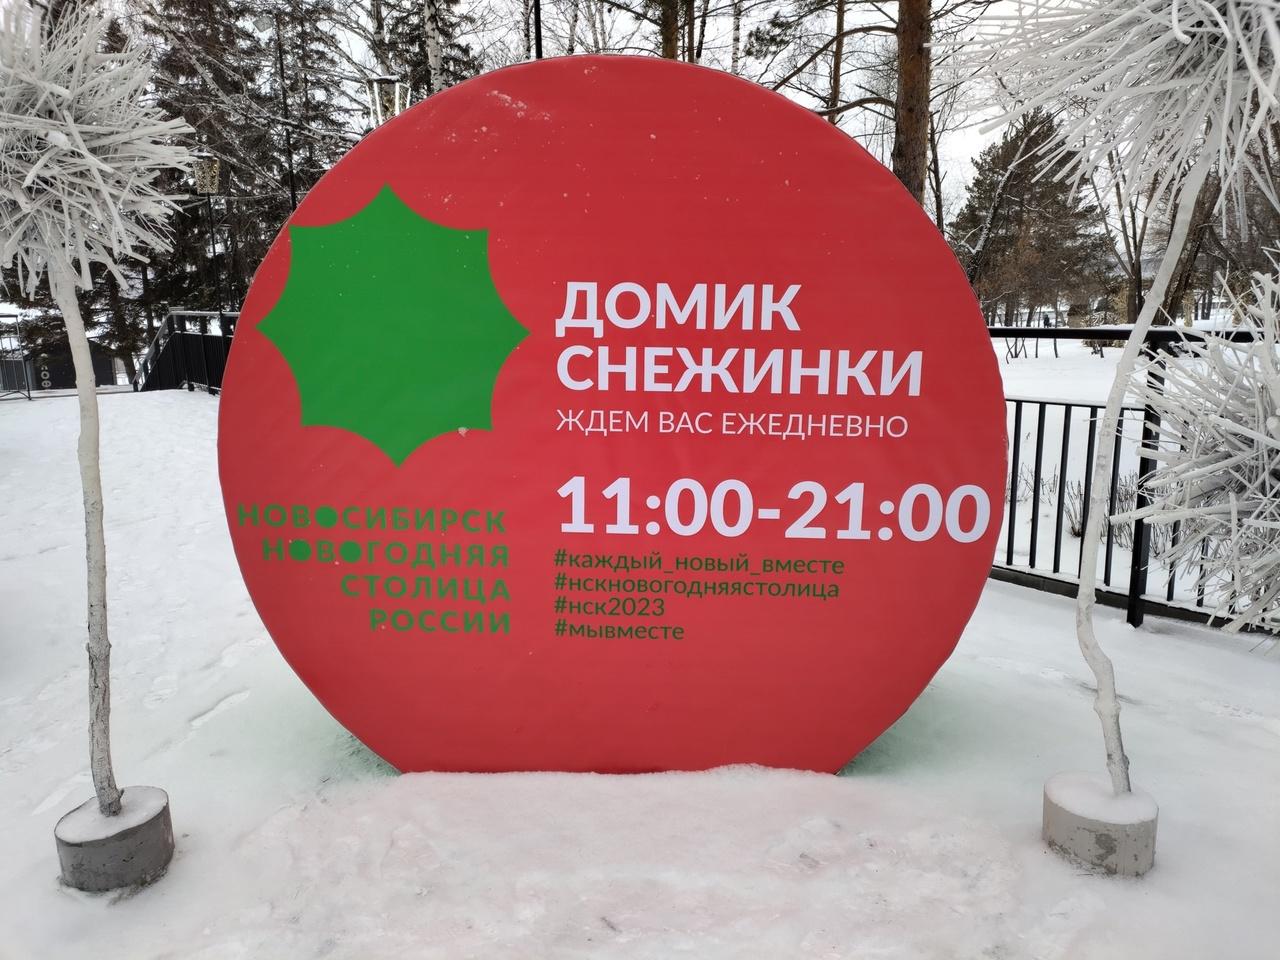 Фото Домик Снежинки открылся на Михайловской набережной Новосибирска 2